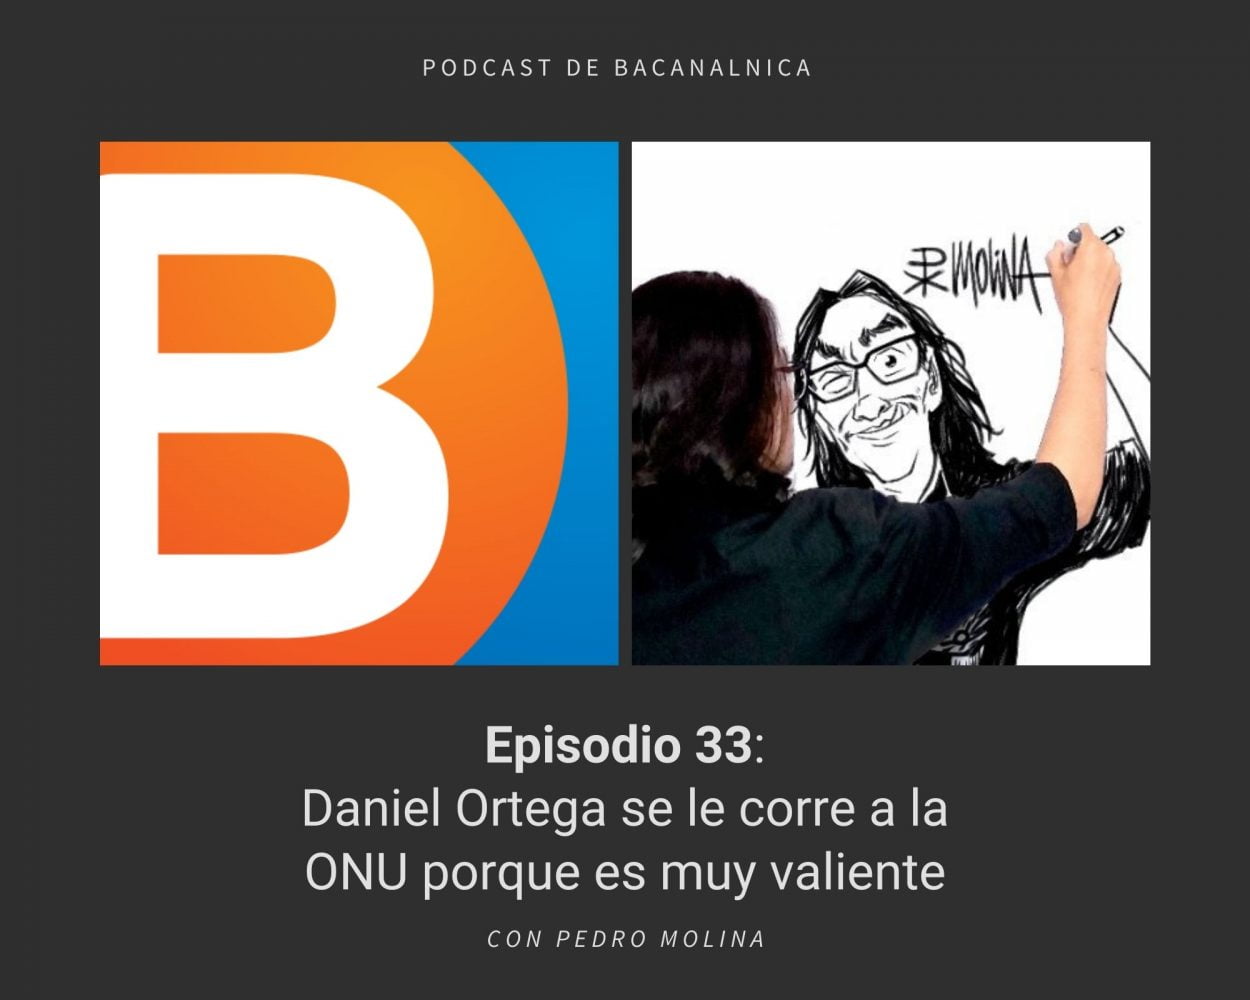 Episodio 33 del podcast de Bacanalnica, con Pedro Molina